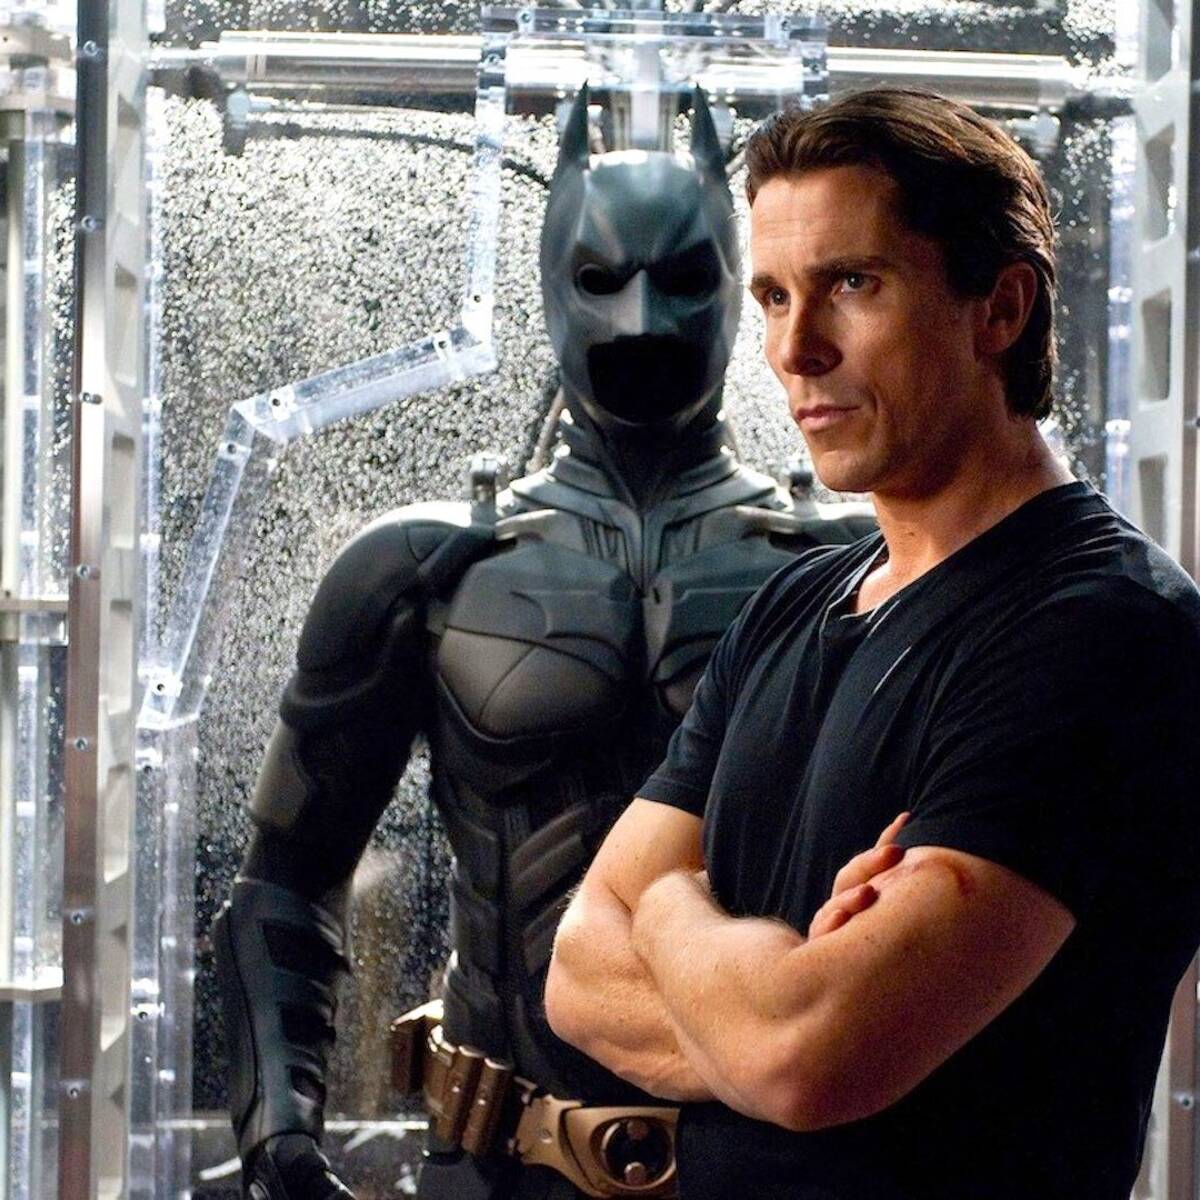 Christian Bale volvería a ser Batman si Christopher Nolan se lo pide -  Vandal Random